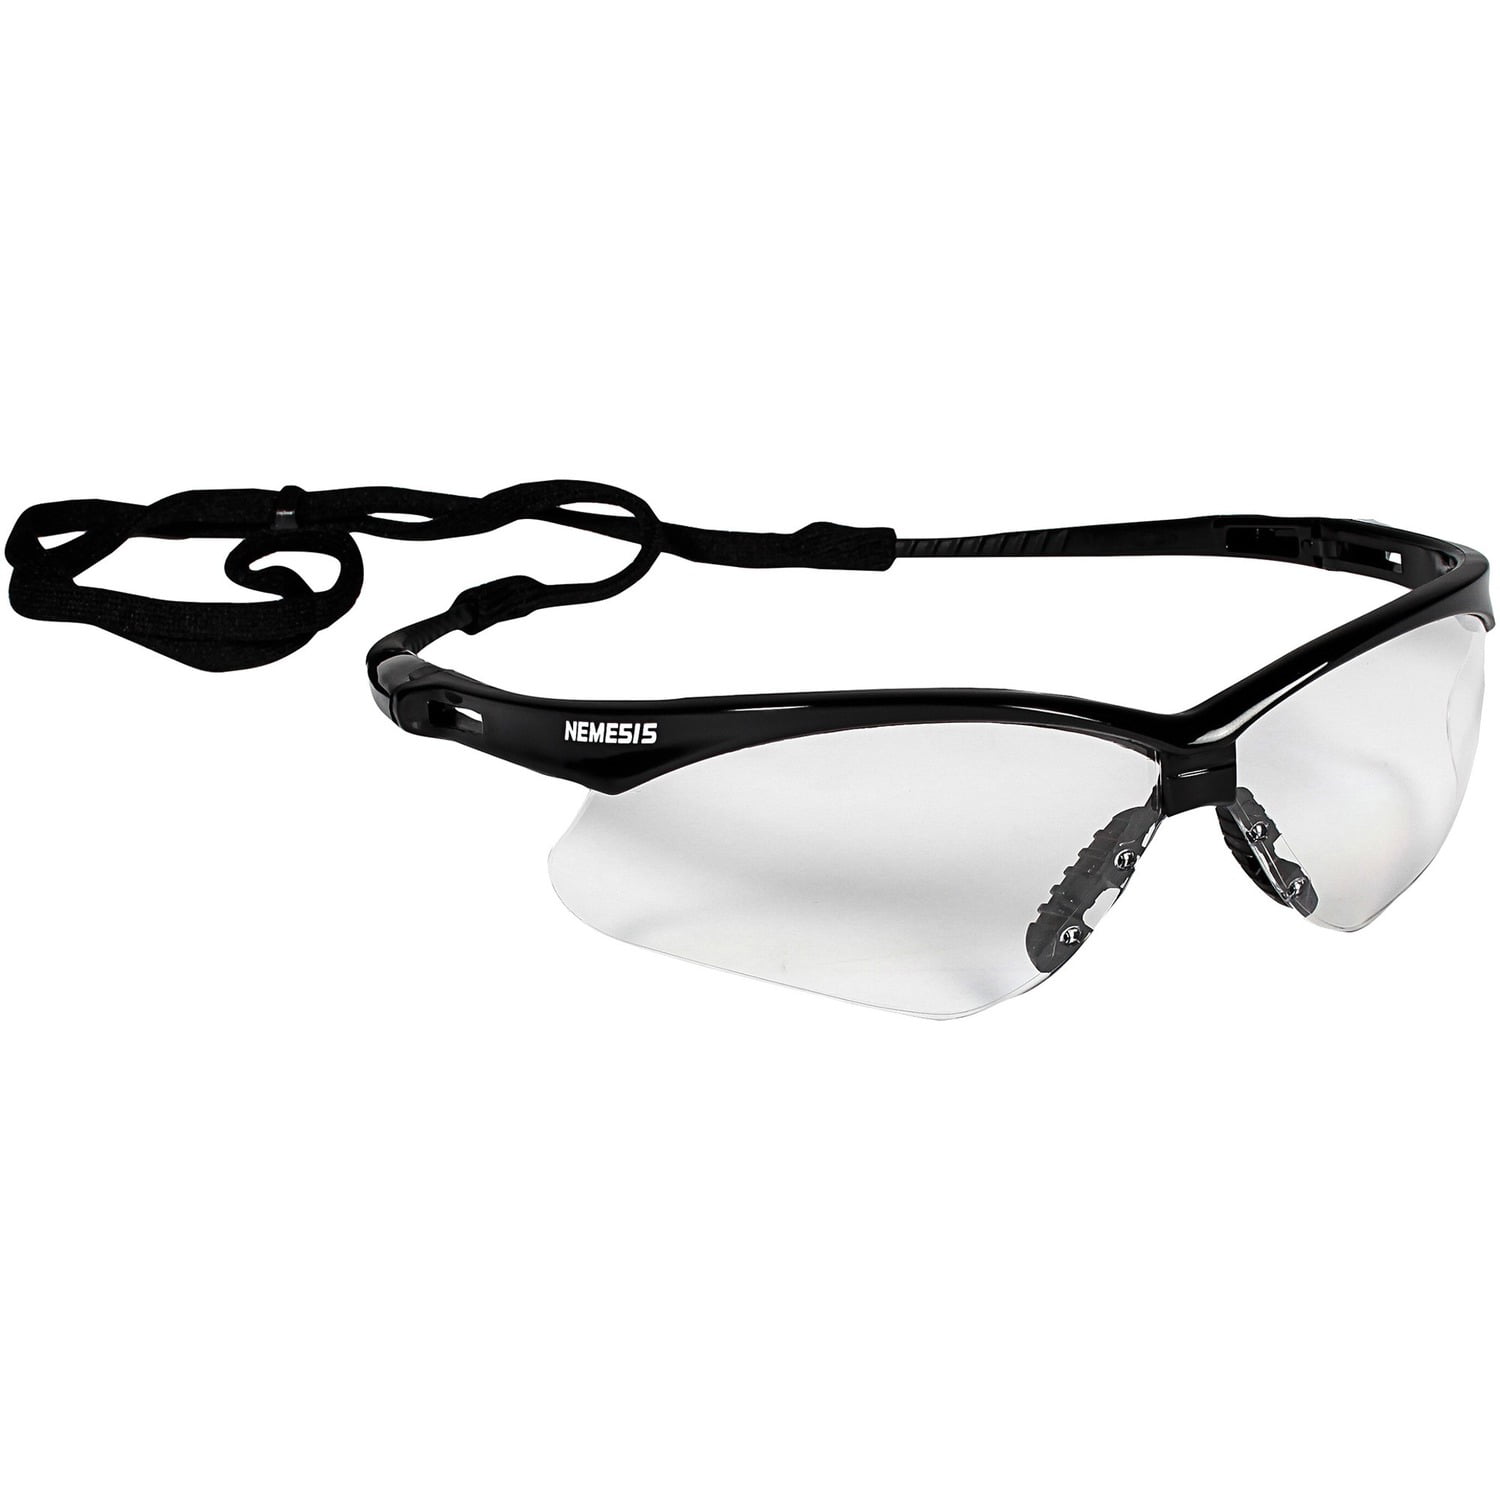 Jackson Safety Nemesis Glasses Black Frame Blue Mirror Lens 14481 for sale online 